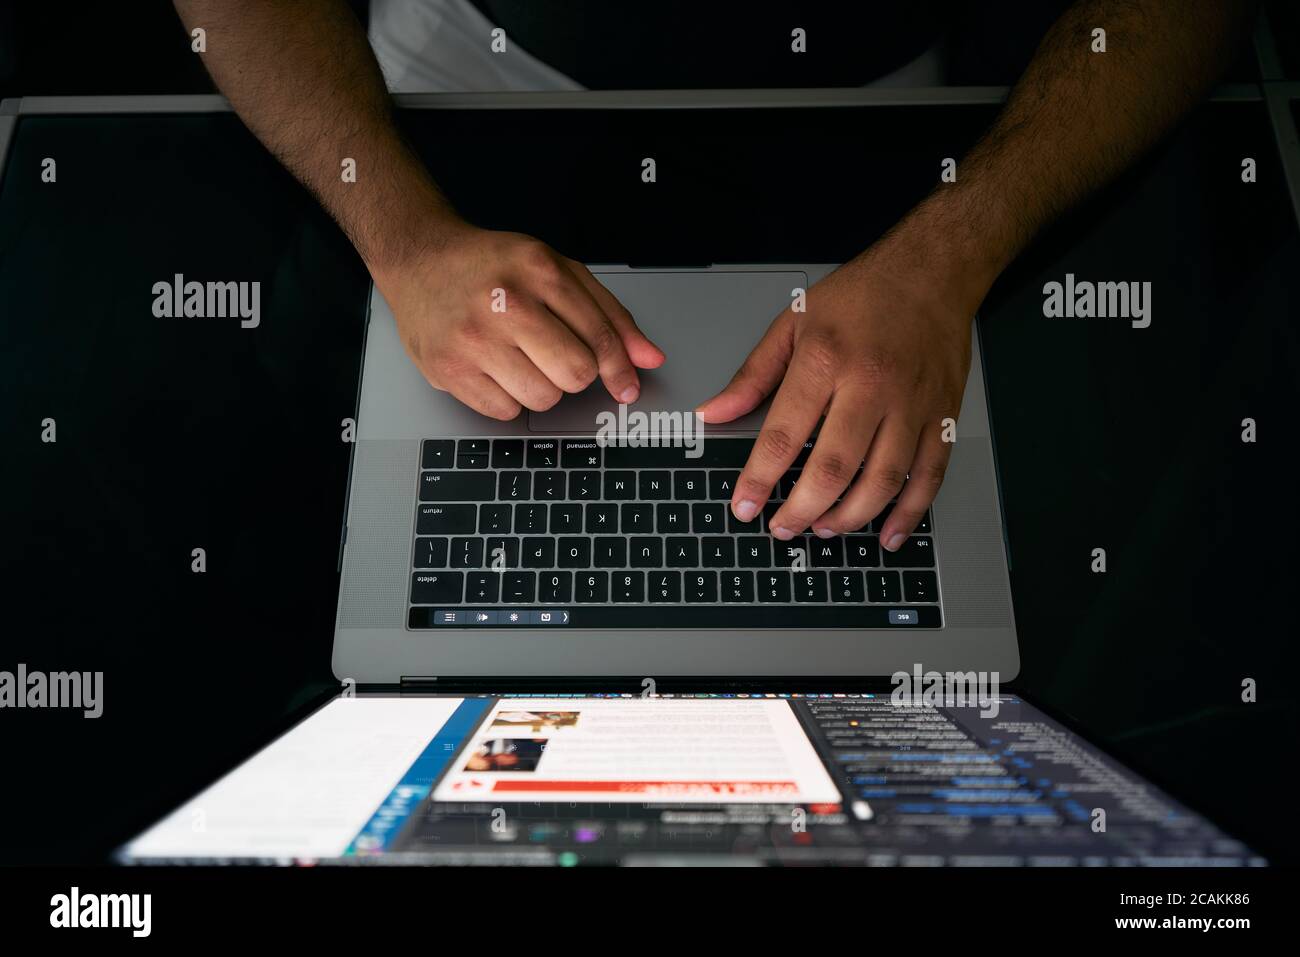 typing on laptop keyboard Stock Photo